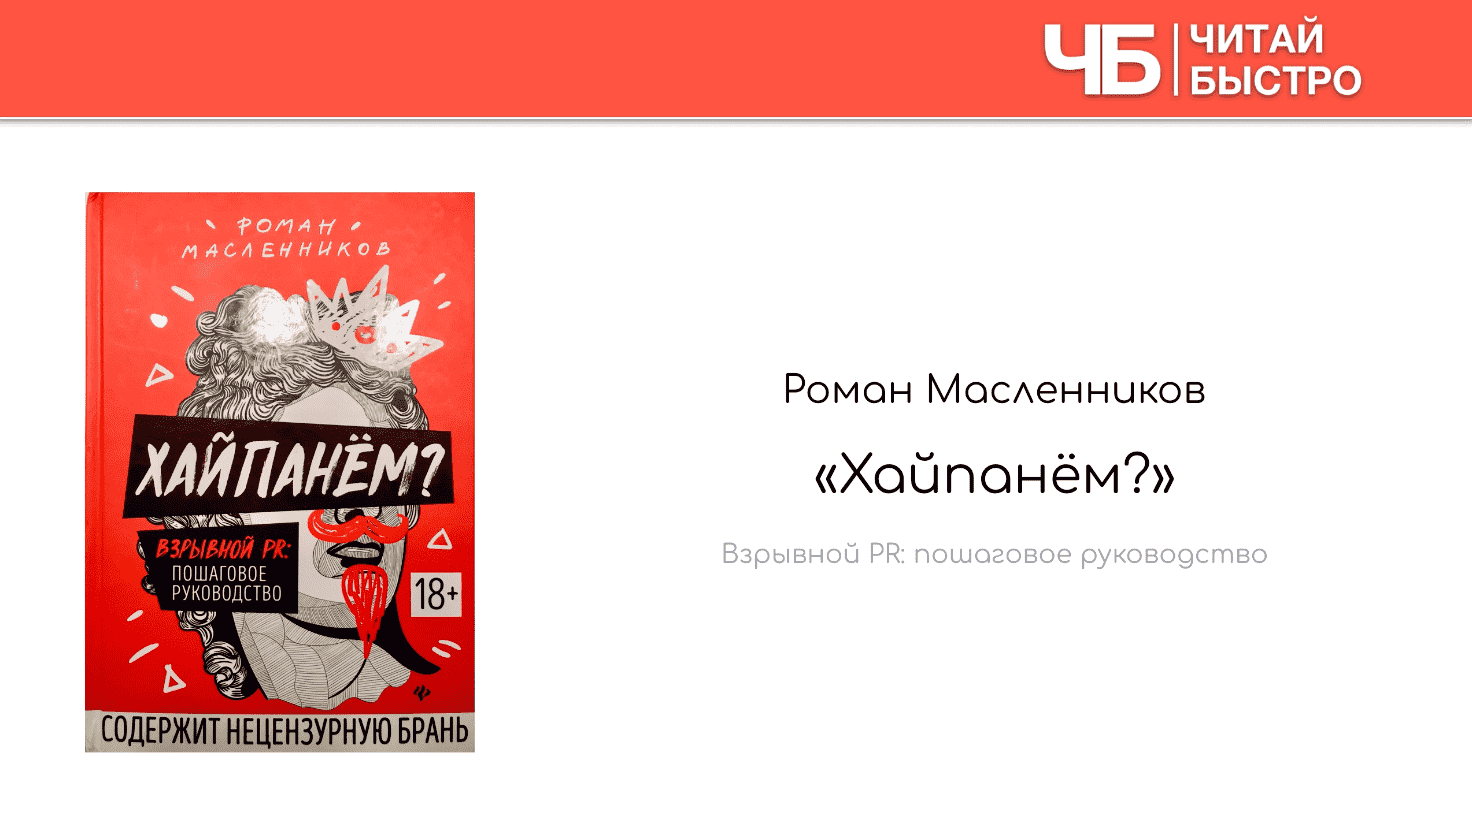 Заглавный слайд краткого содержания книги Романа Масленникова «Хайпанем?».